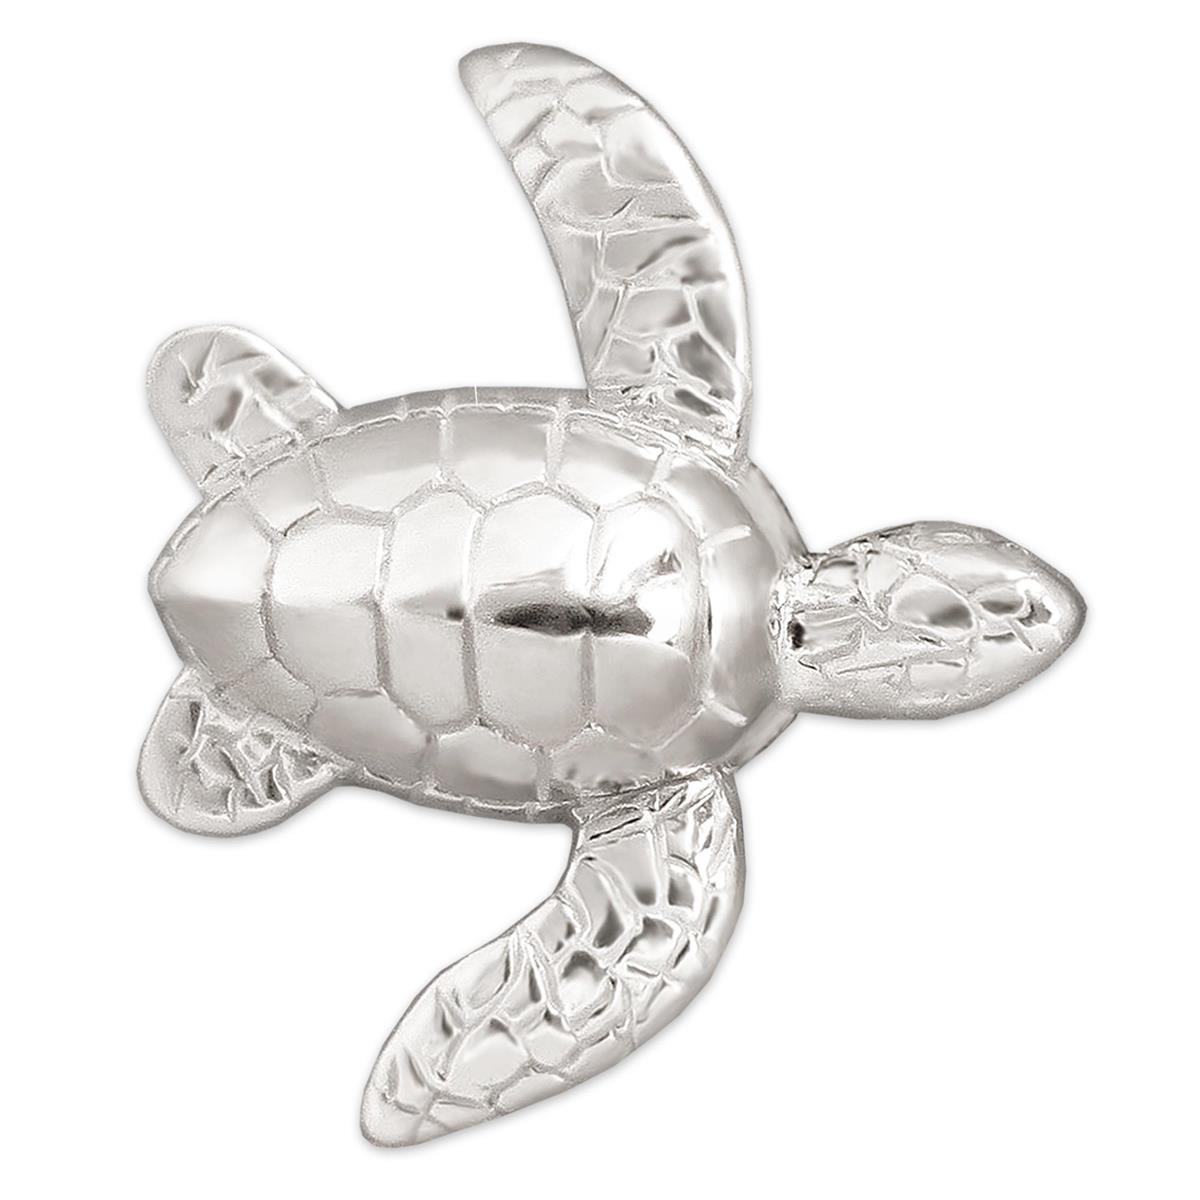 Silberner Anhänger Schildkröte 25 mm vollplastisch mit beweglichen Flossen seitlich hängend STERLING SILBER 925